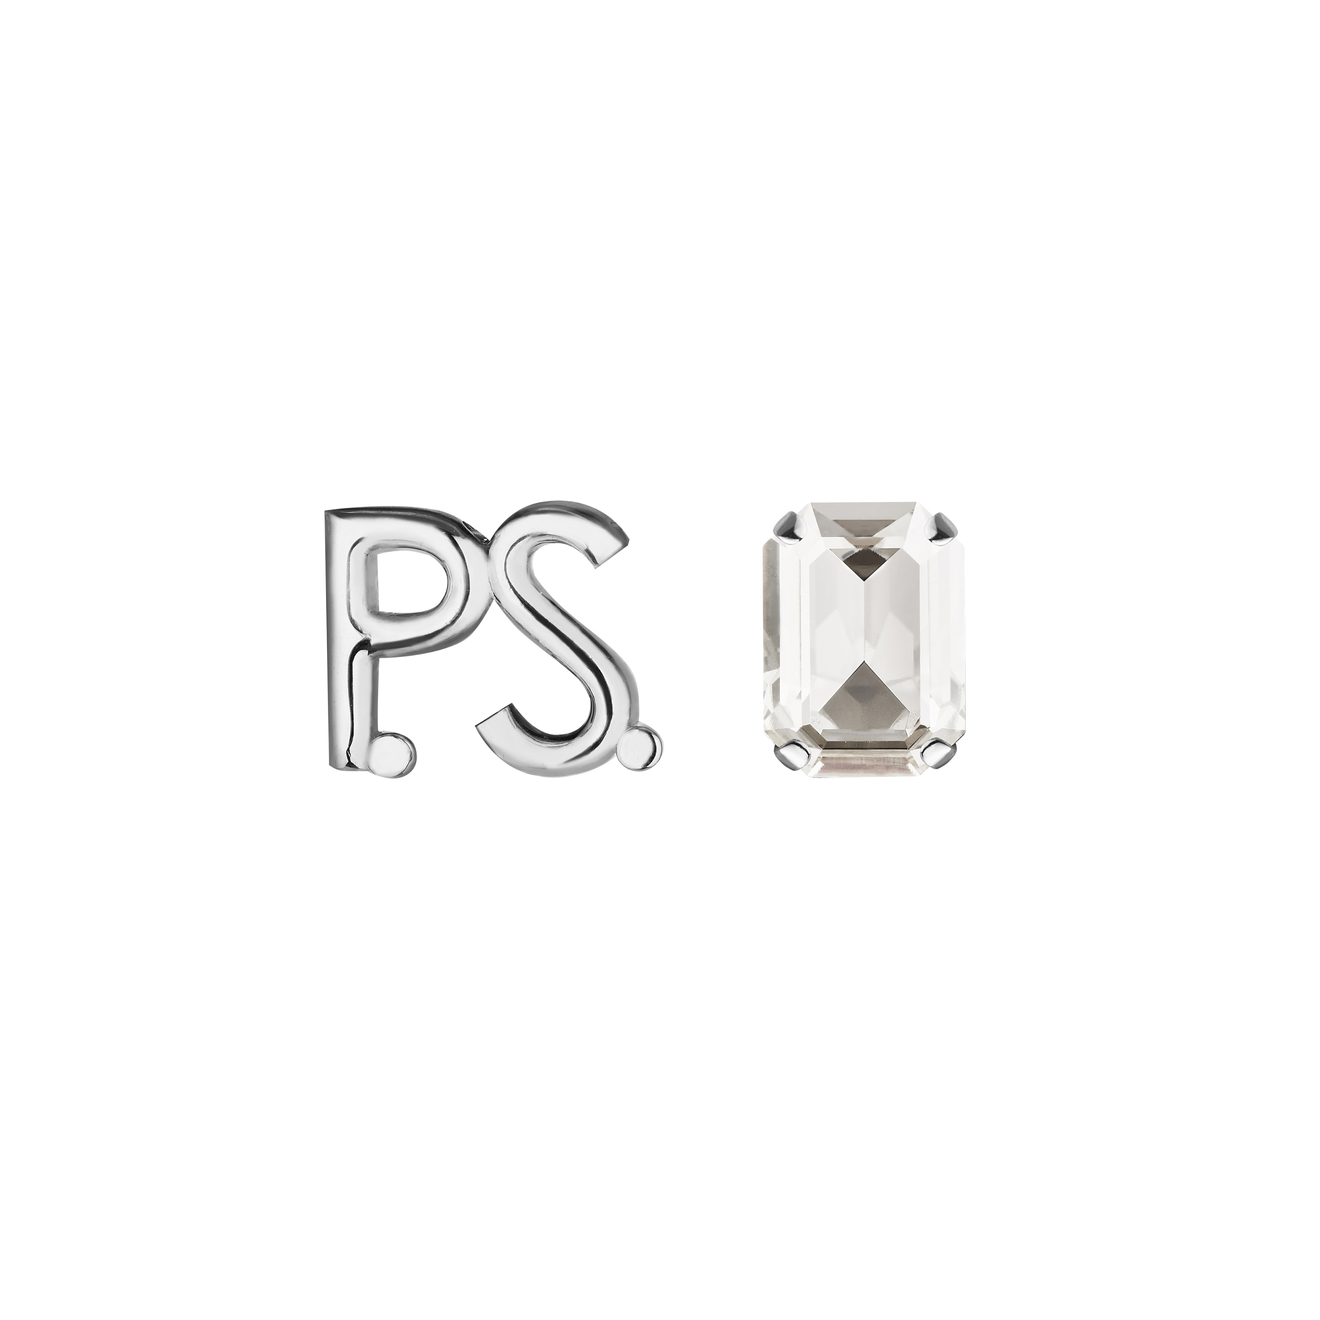 Phenomenal Studio Серьги с фирменным логотипом и крупным кристаллом P.S. Crystal Rhodium